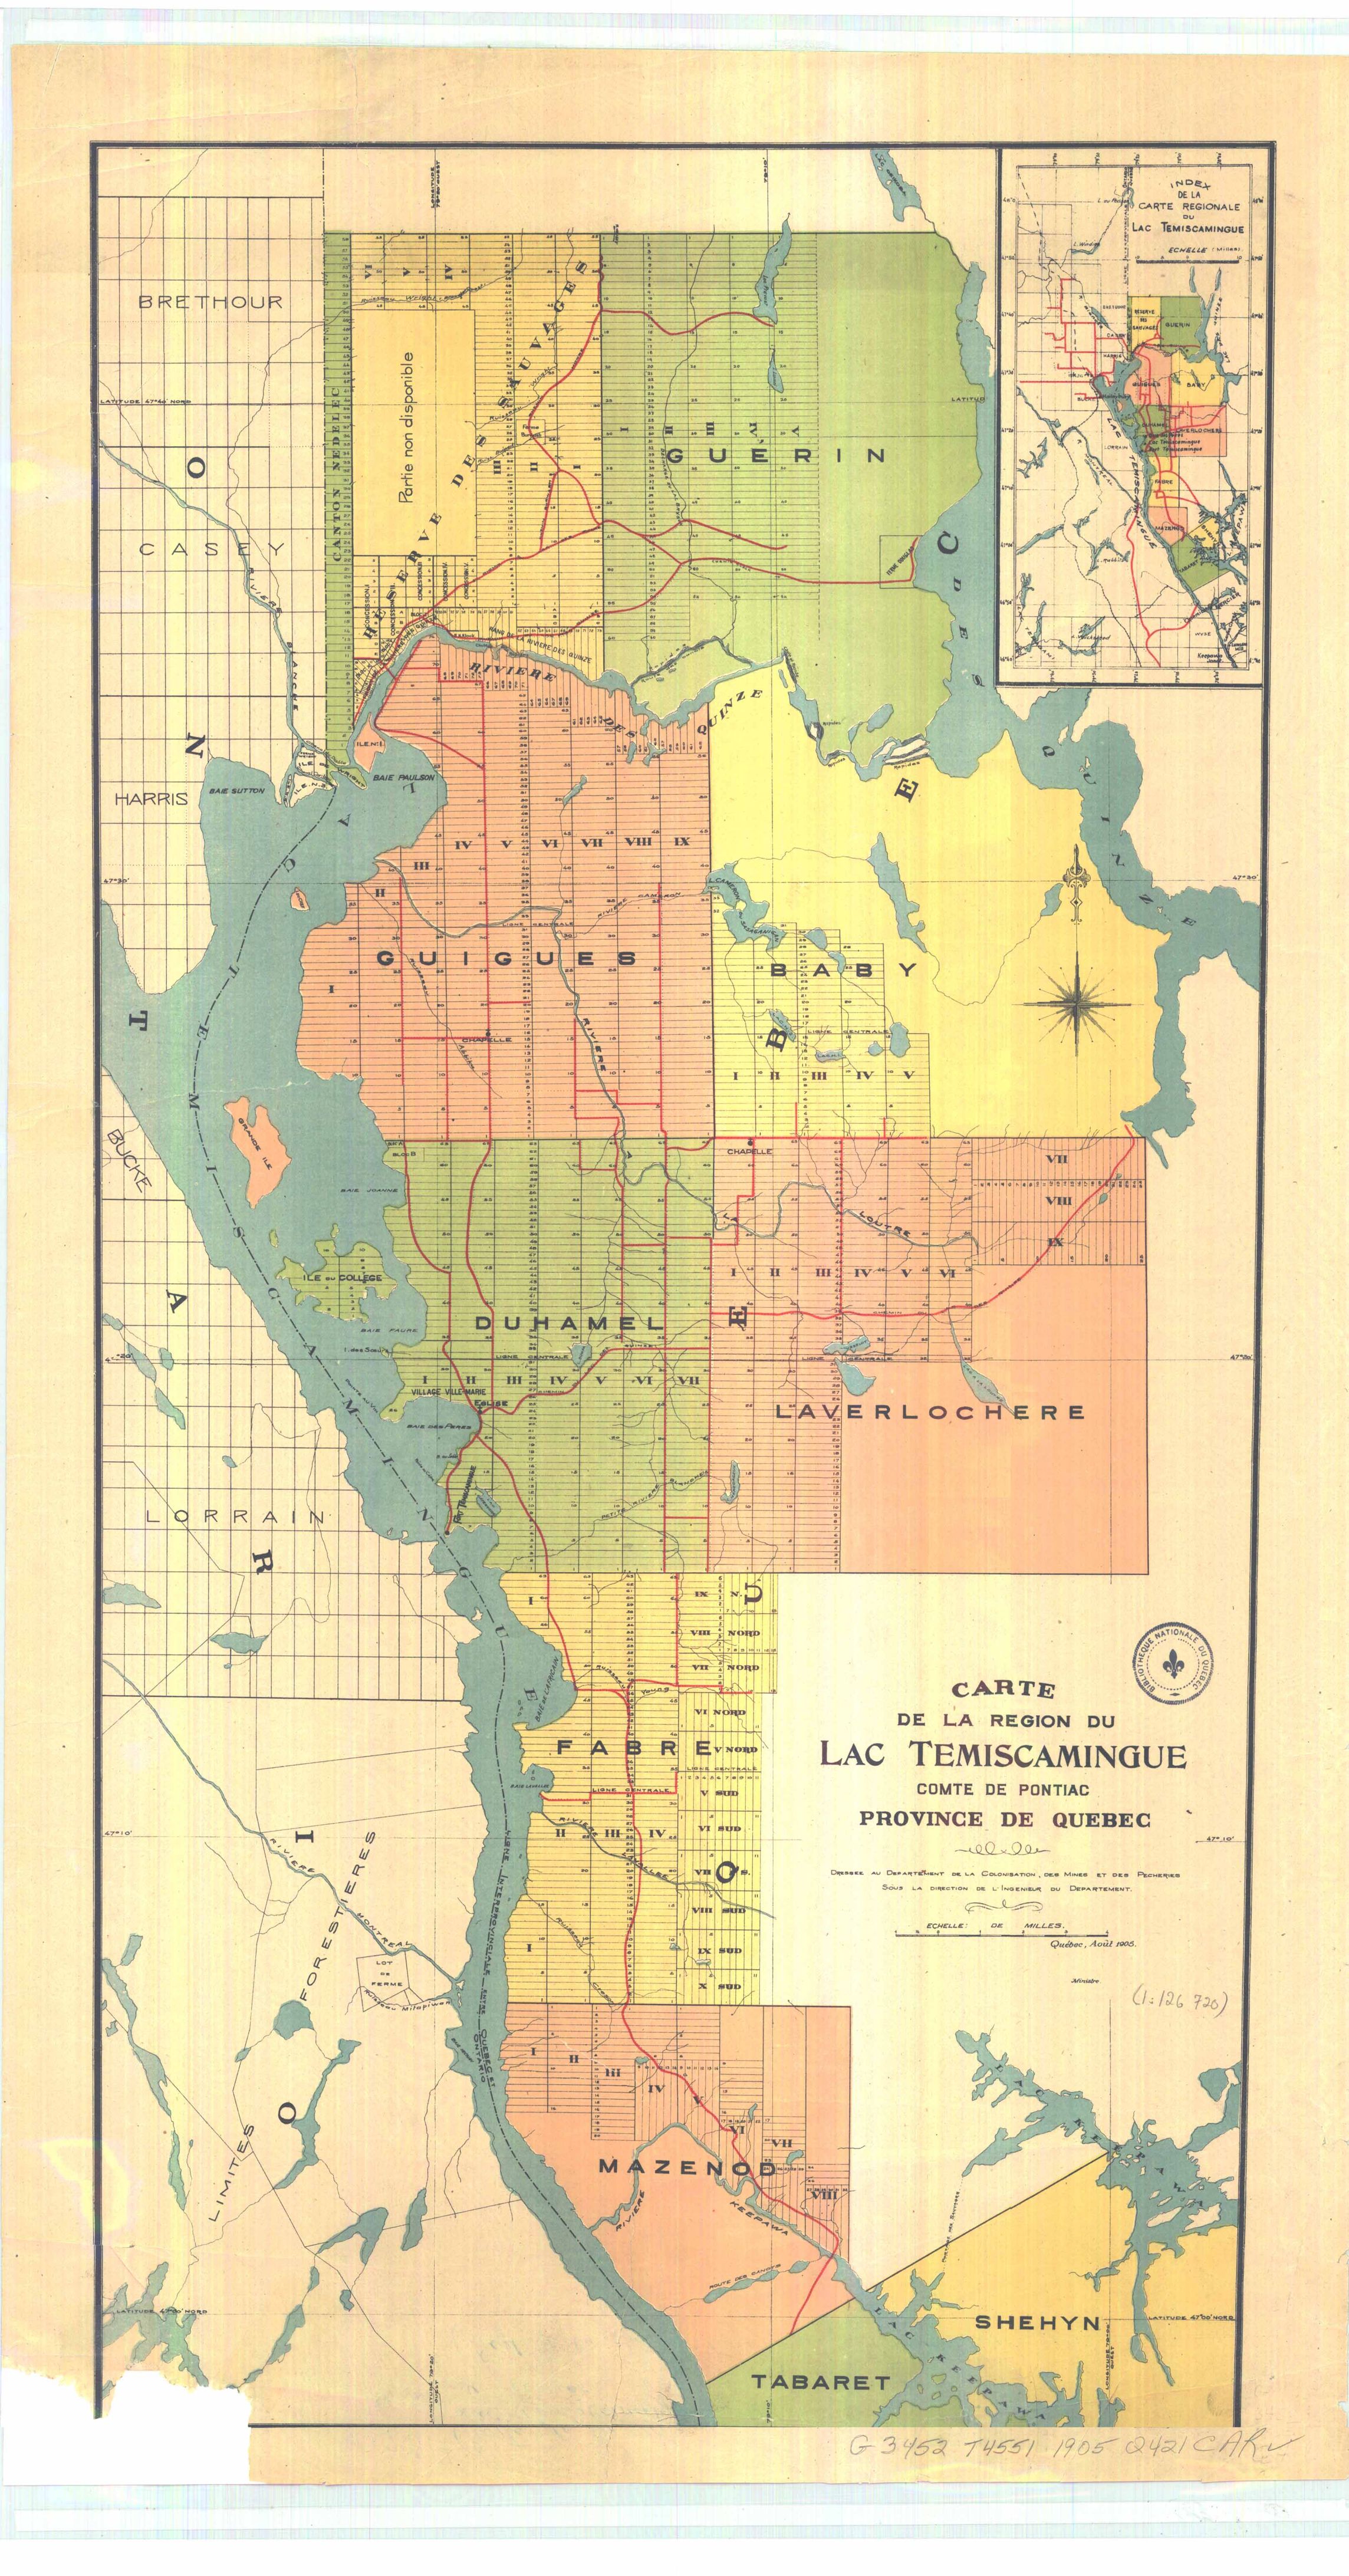 Carte géographique détaillée de la région du Lac Témiscamingue